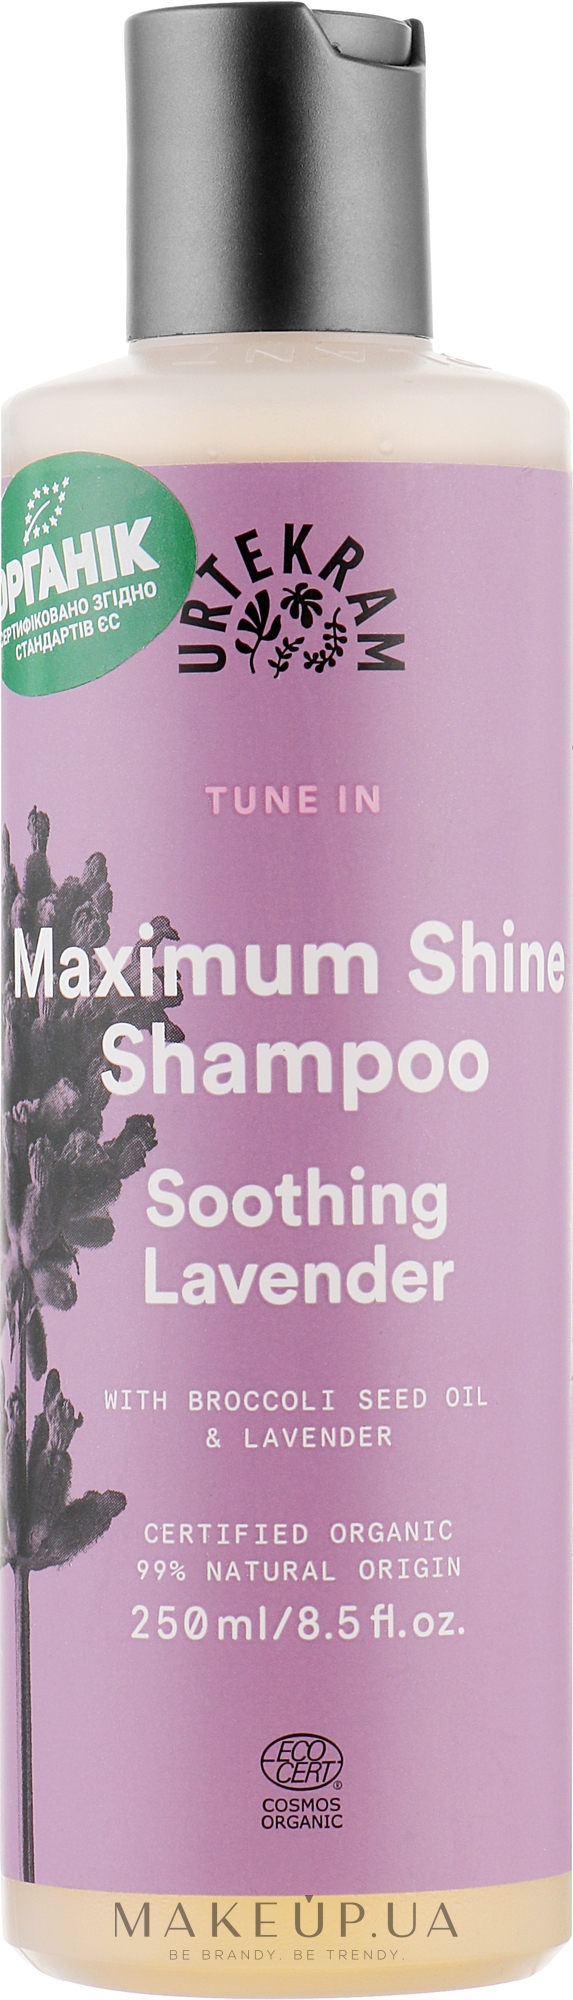 Органический шампунь для волос "Успокаивающая лаванда" - Urtekram Soothing Lavender Maximum Shine Shampoo — фото 250ml